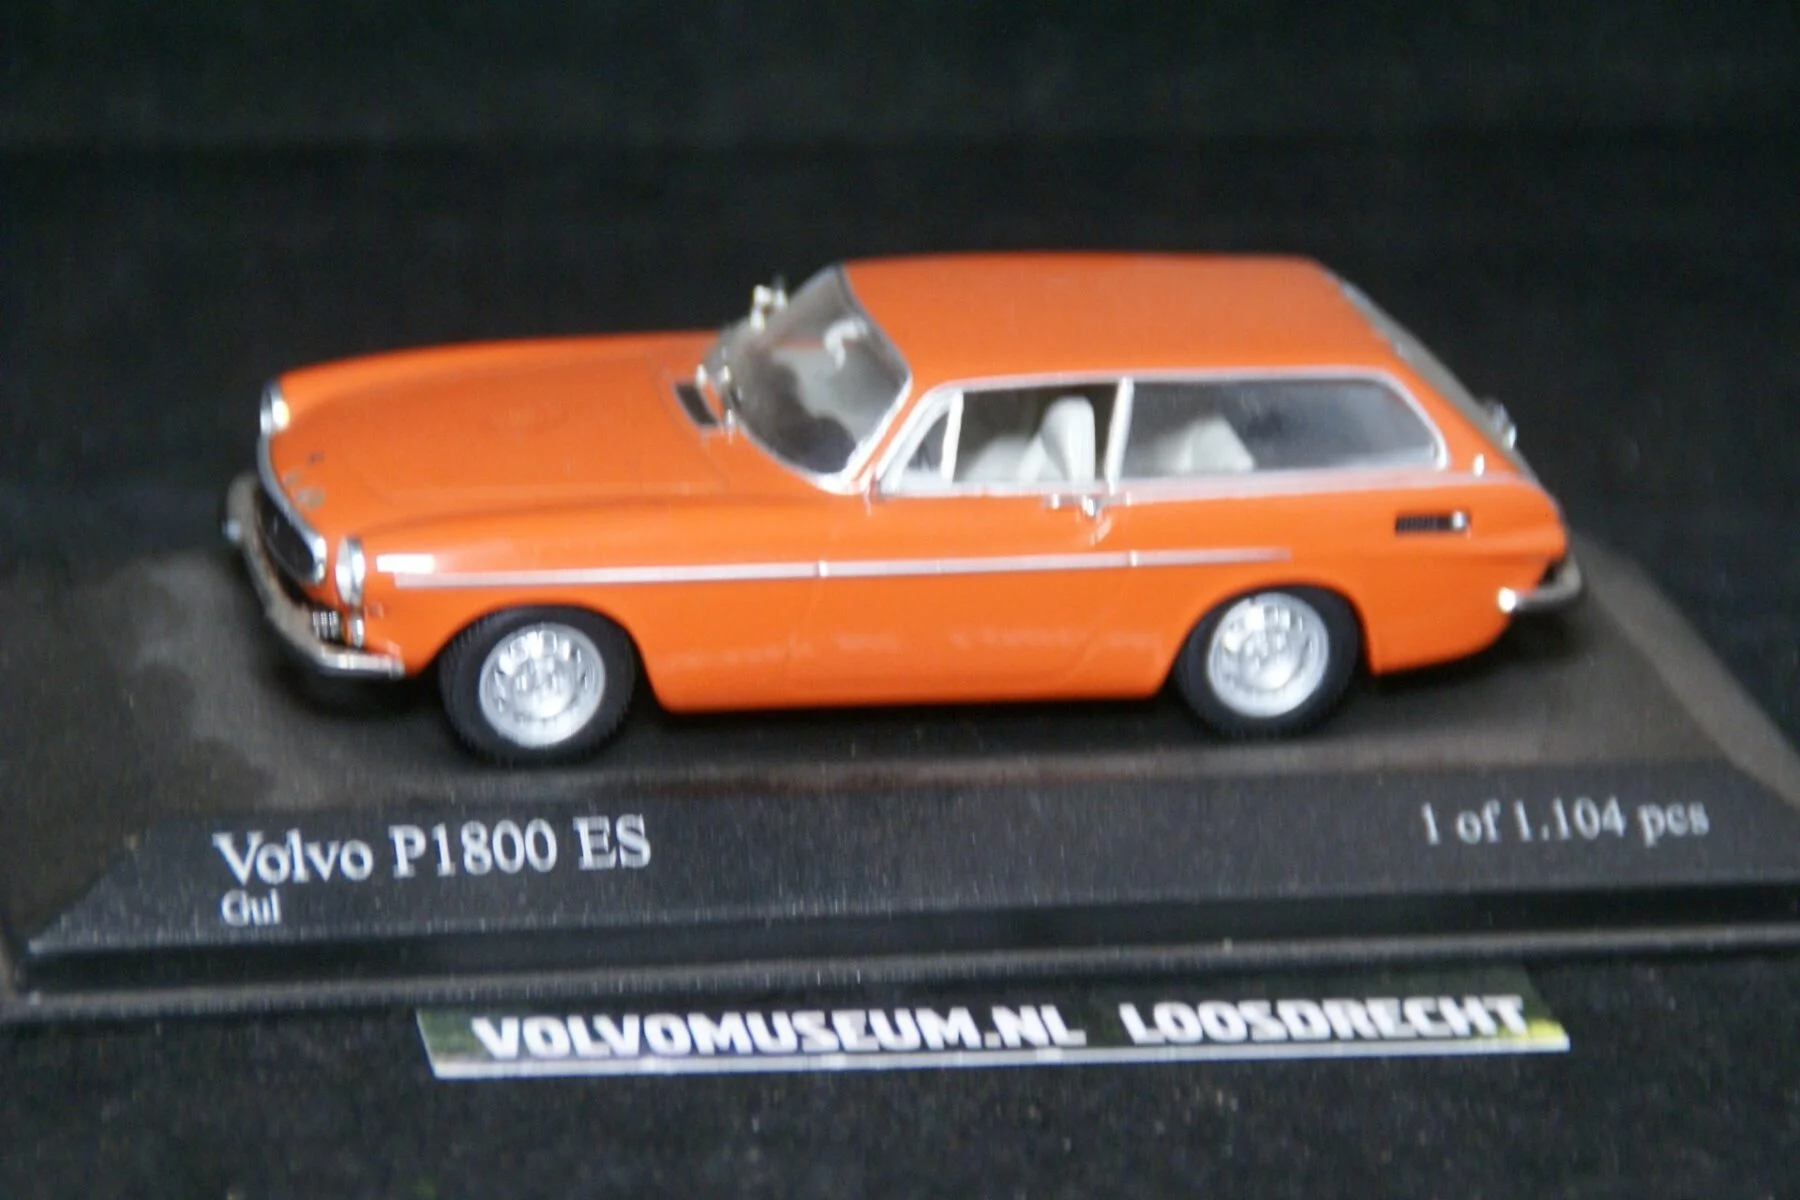 DSC03220 miniatuur 1972 Volvo P1800ES oranje 1op43 Minichamps 1 van 1.104 M